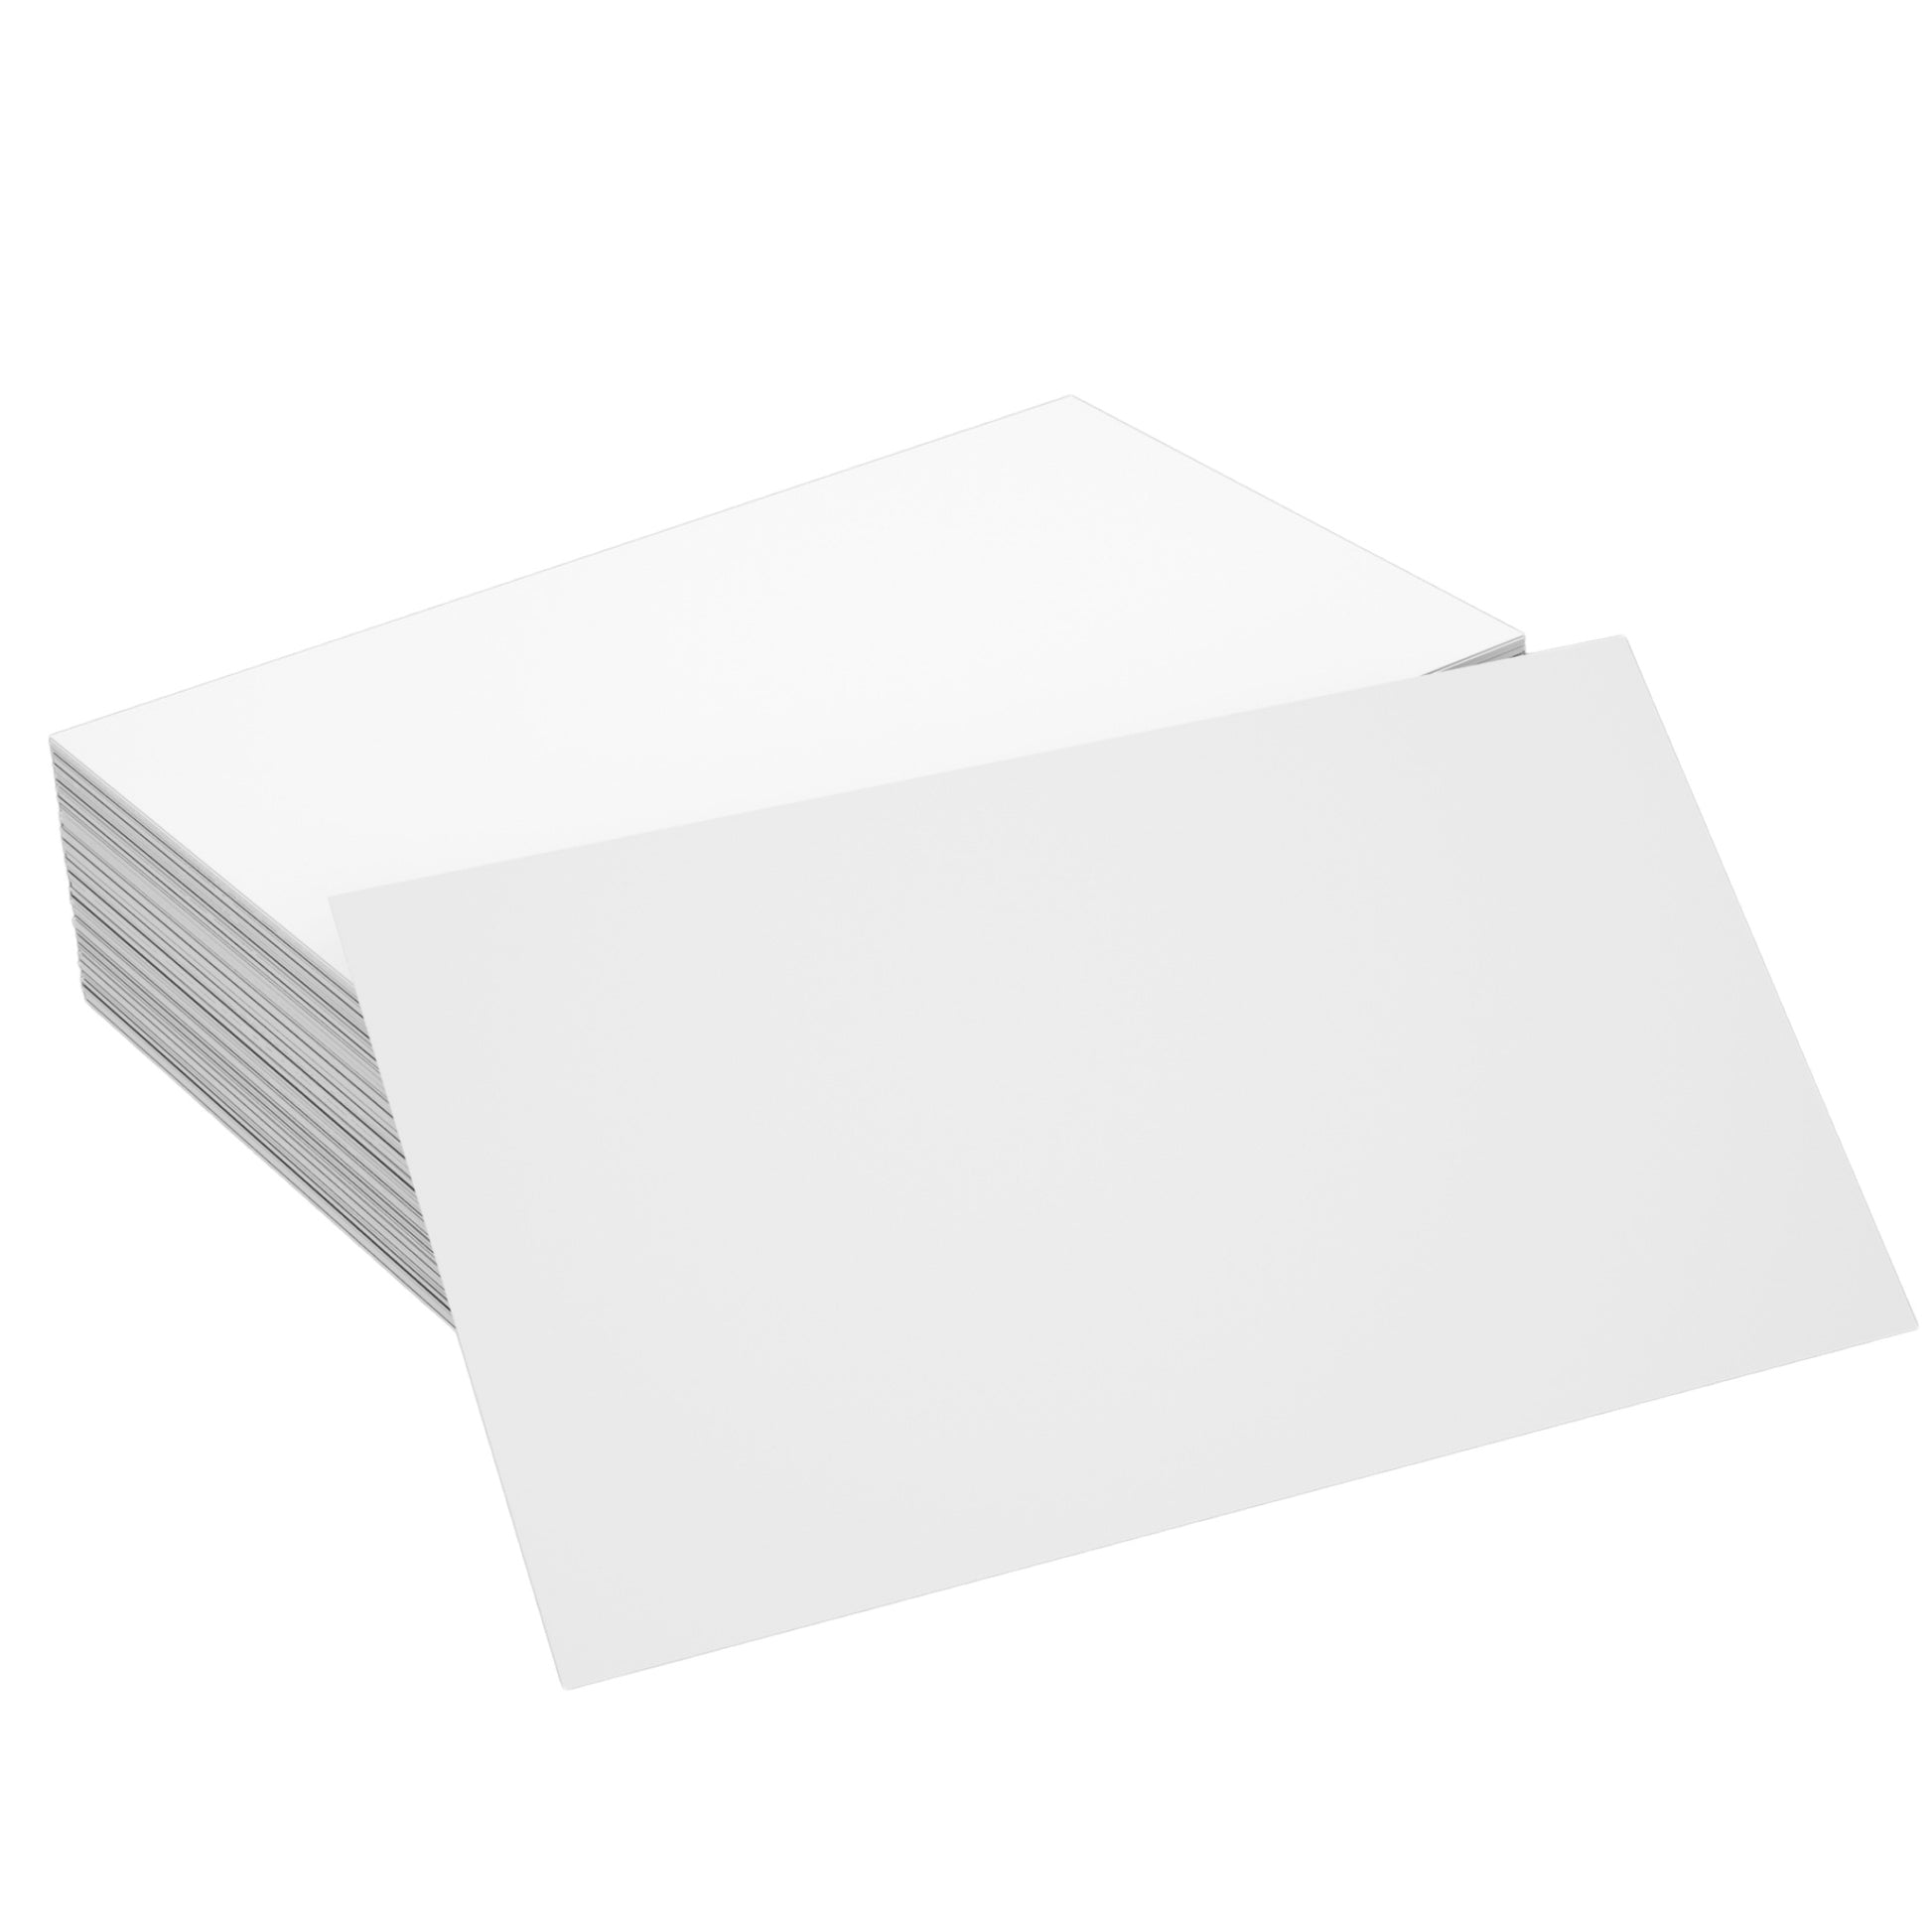 Papercutters Inc. - Papercutters Inc White Butcher Paper / Meat